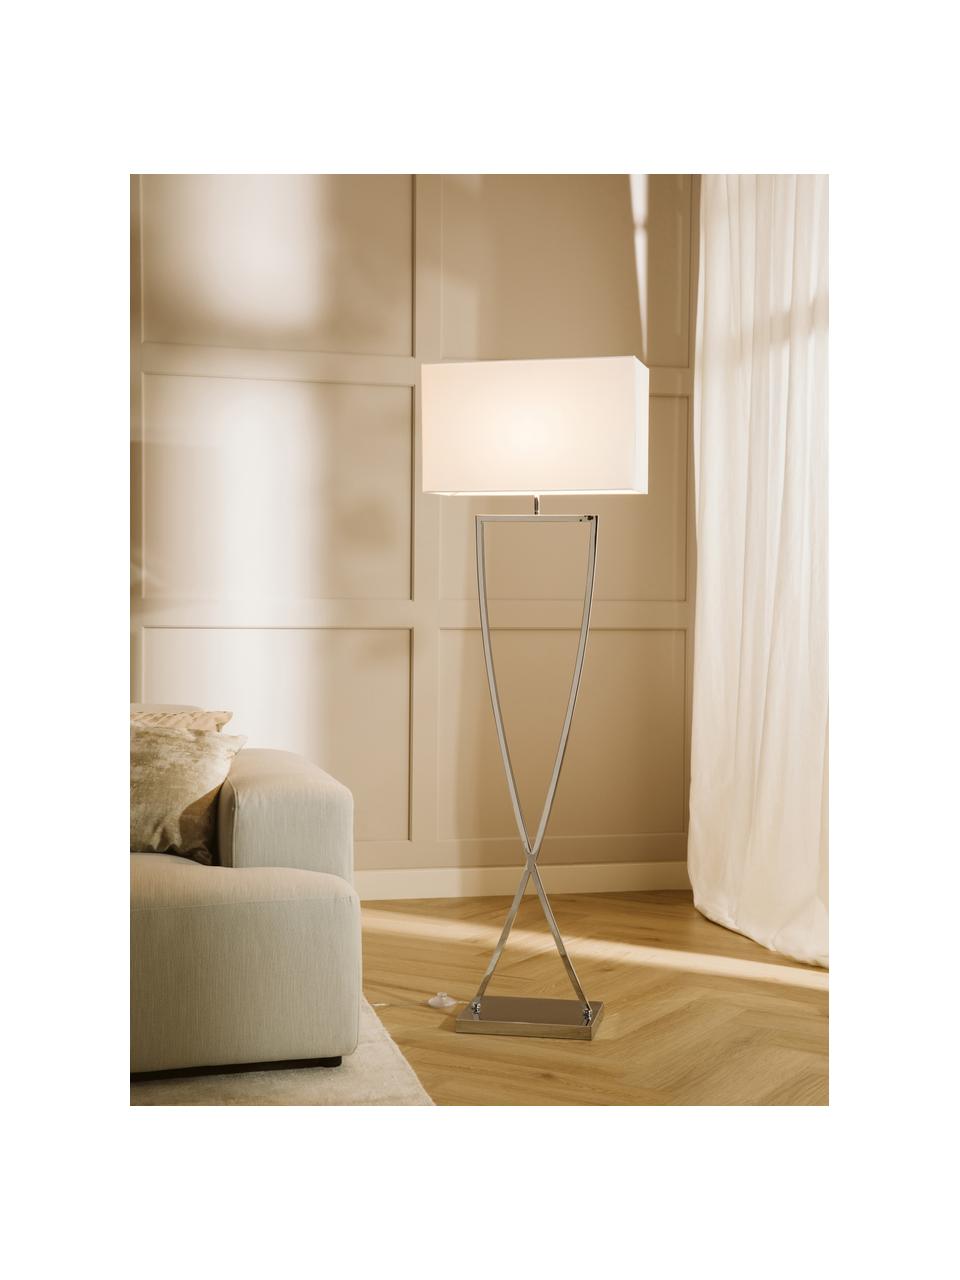 Stehlampe Toulouse, Lampenschirm: Textil, Lampenfuß: Metall, verchromt, Silberfarben, Weiß, H 157 cm